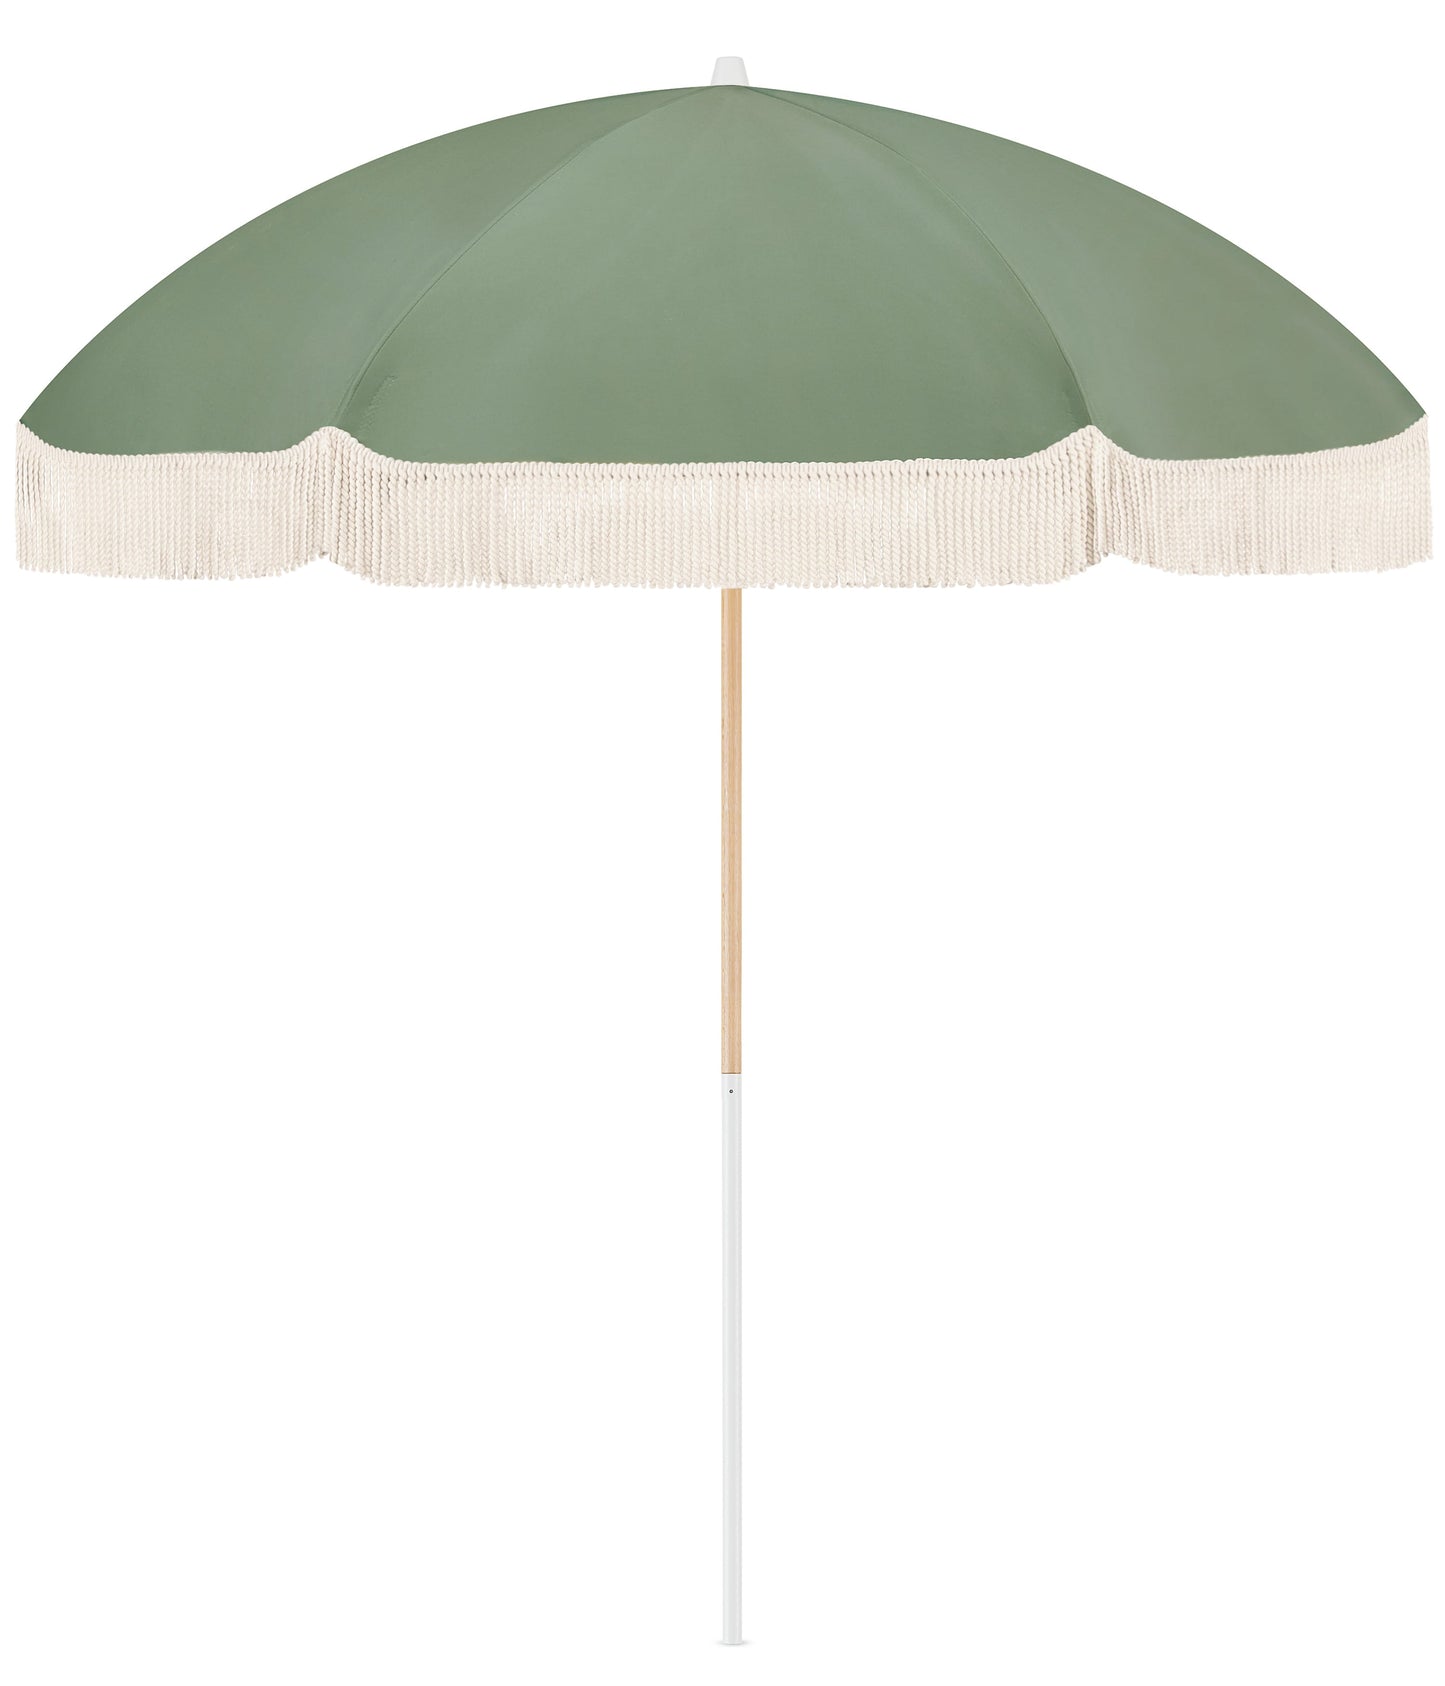 Tallow Garden Umbrella